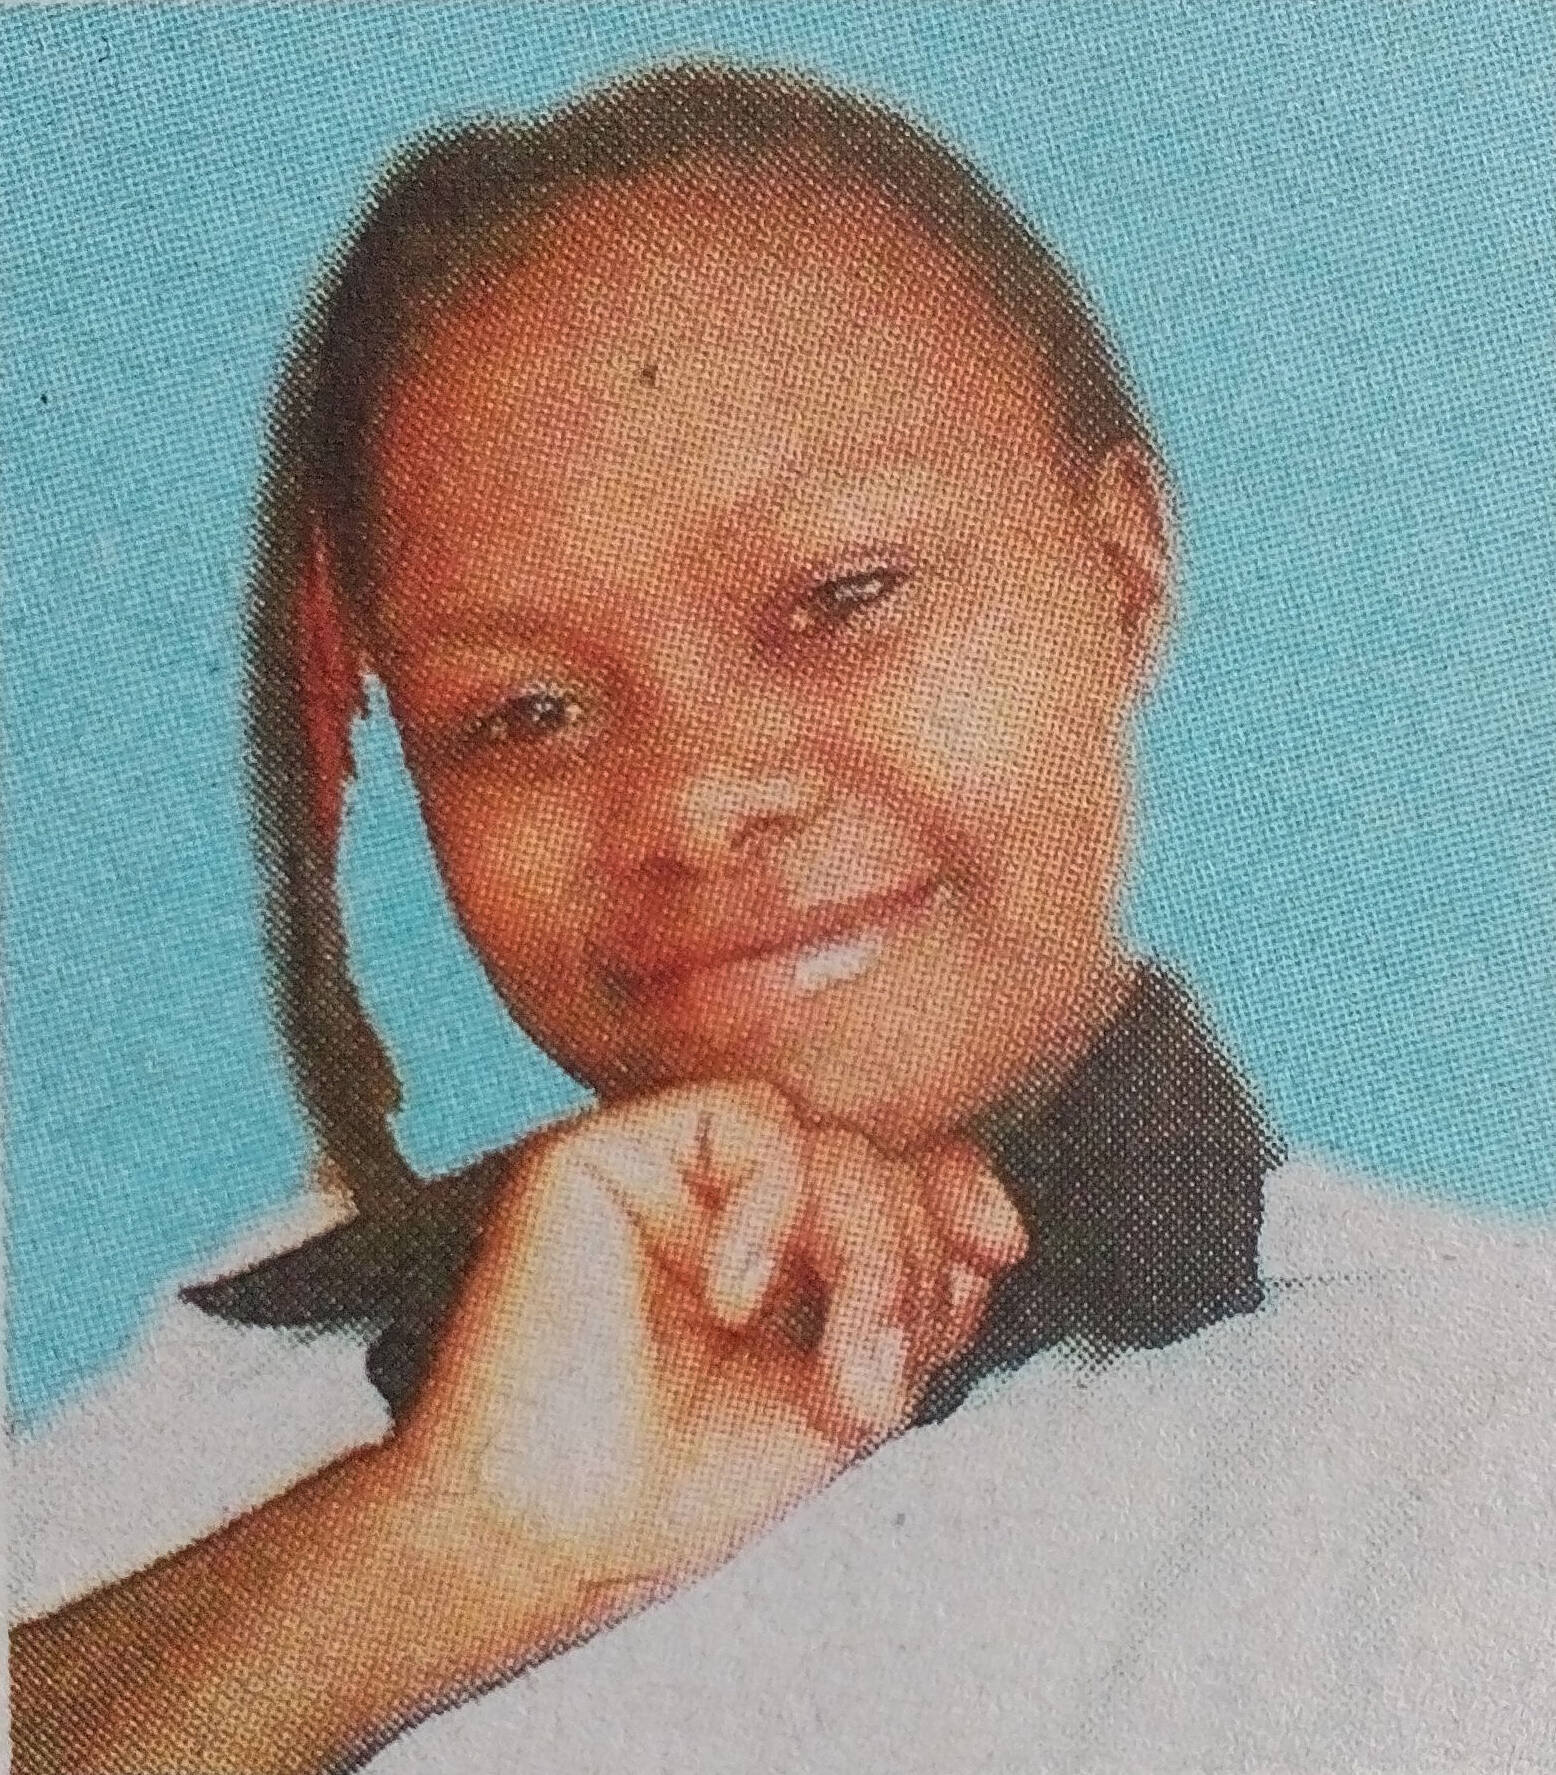 Obituary Image of Jane Mukami Njeri Gatimu. Sunrise 07/02/1993 Sunset 22/03/2017